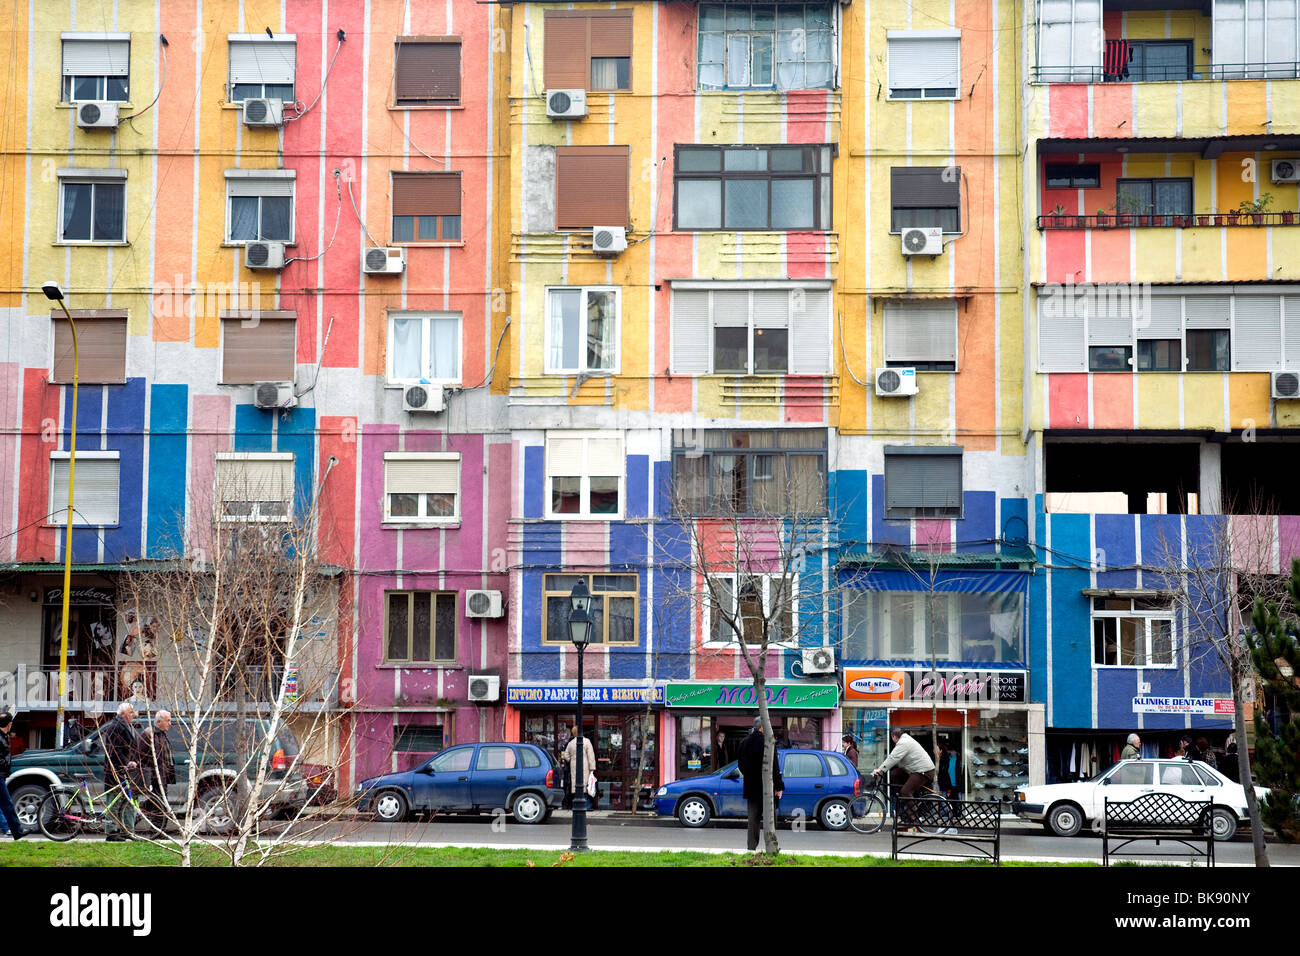 Viele Gebäude in Albaniens Hauptstadt Tirana werden von einem Bürgermeister. Caprice, in Mustern von lebendigen Farben gemalt Stockfoto